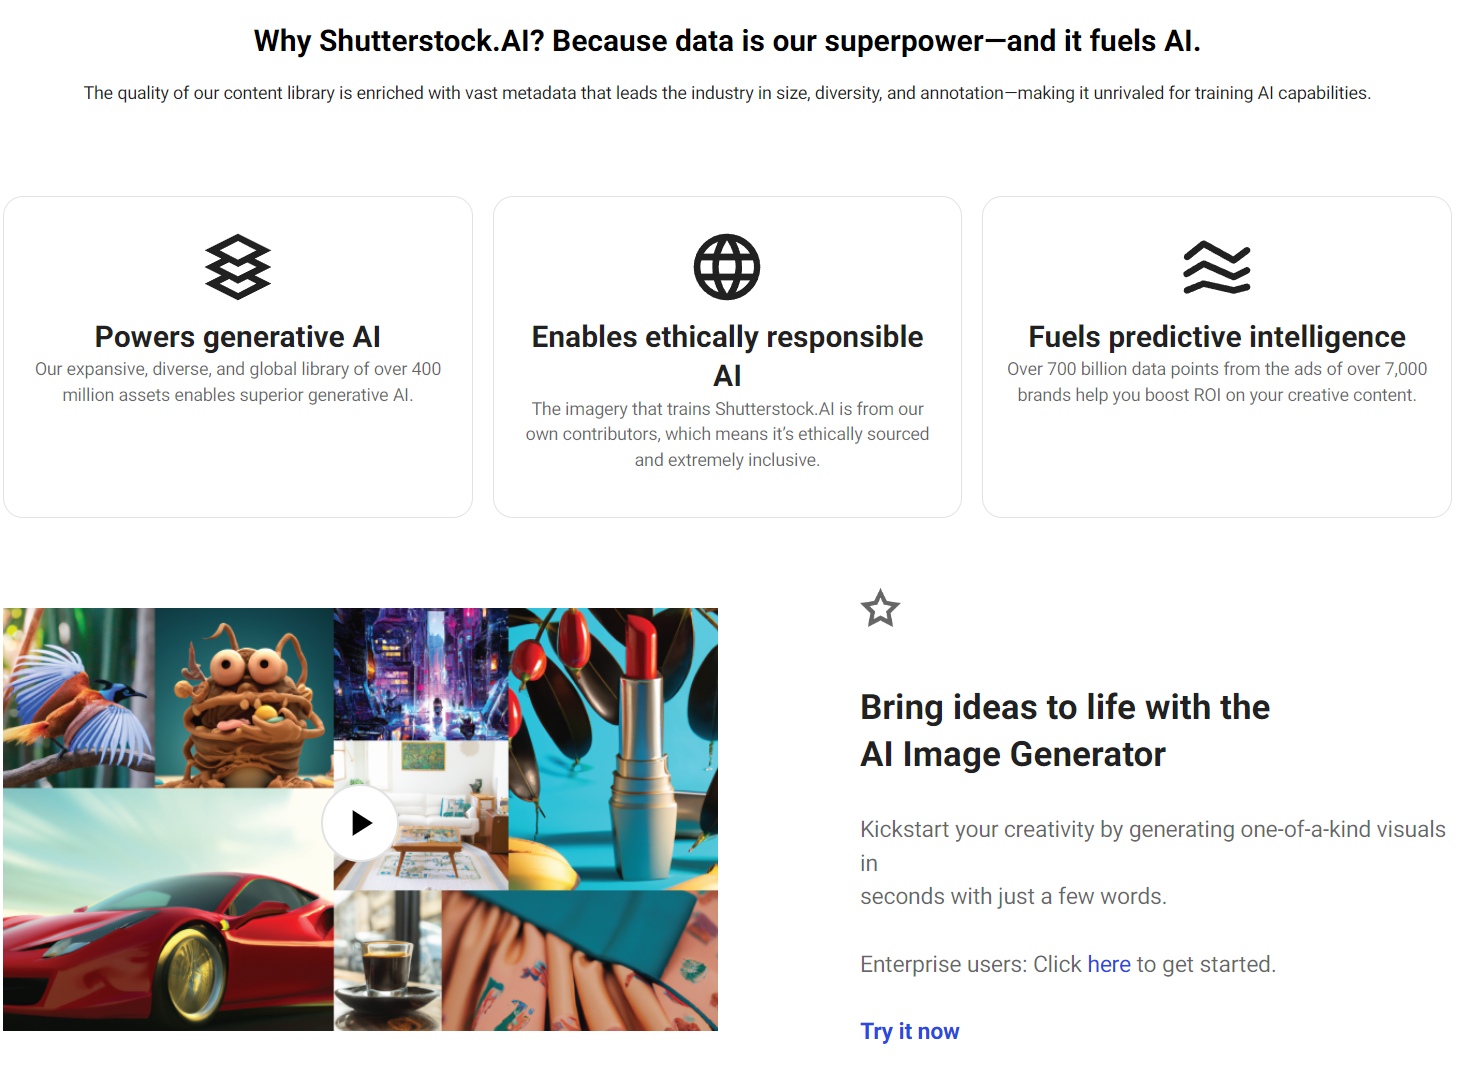 数字确权概念股Shutterstock官宣与OpenAI扩大合作 股价涨近10%